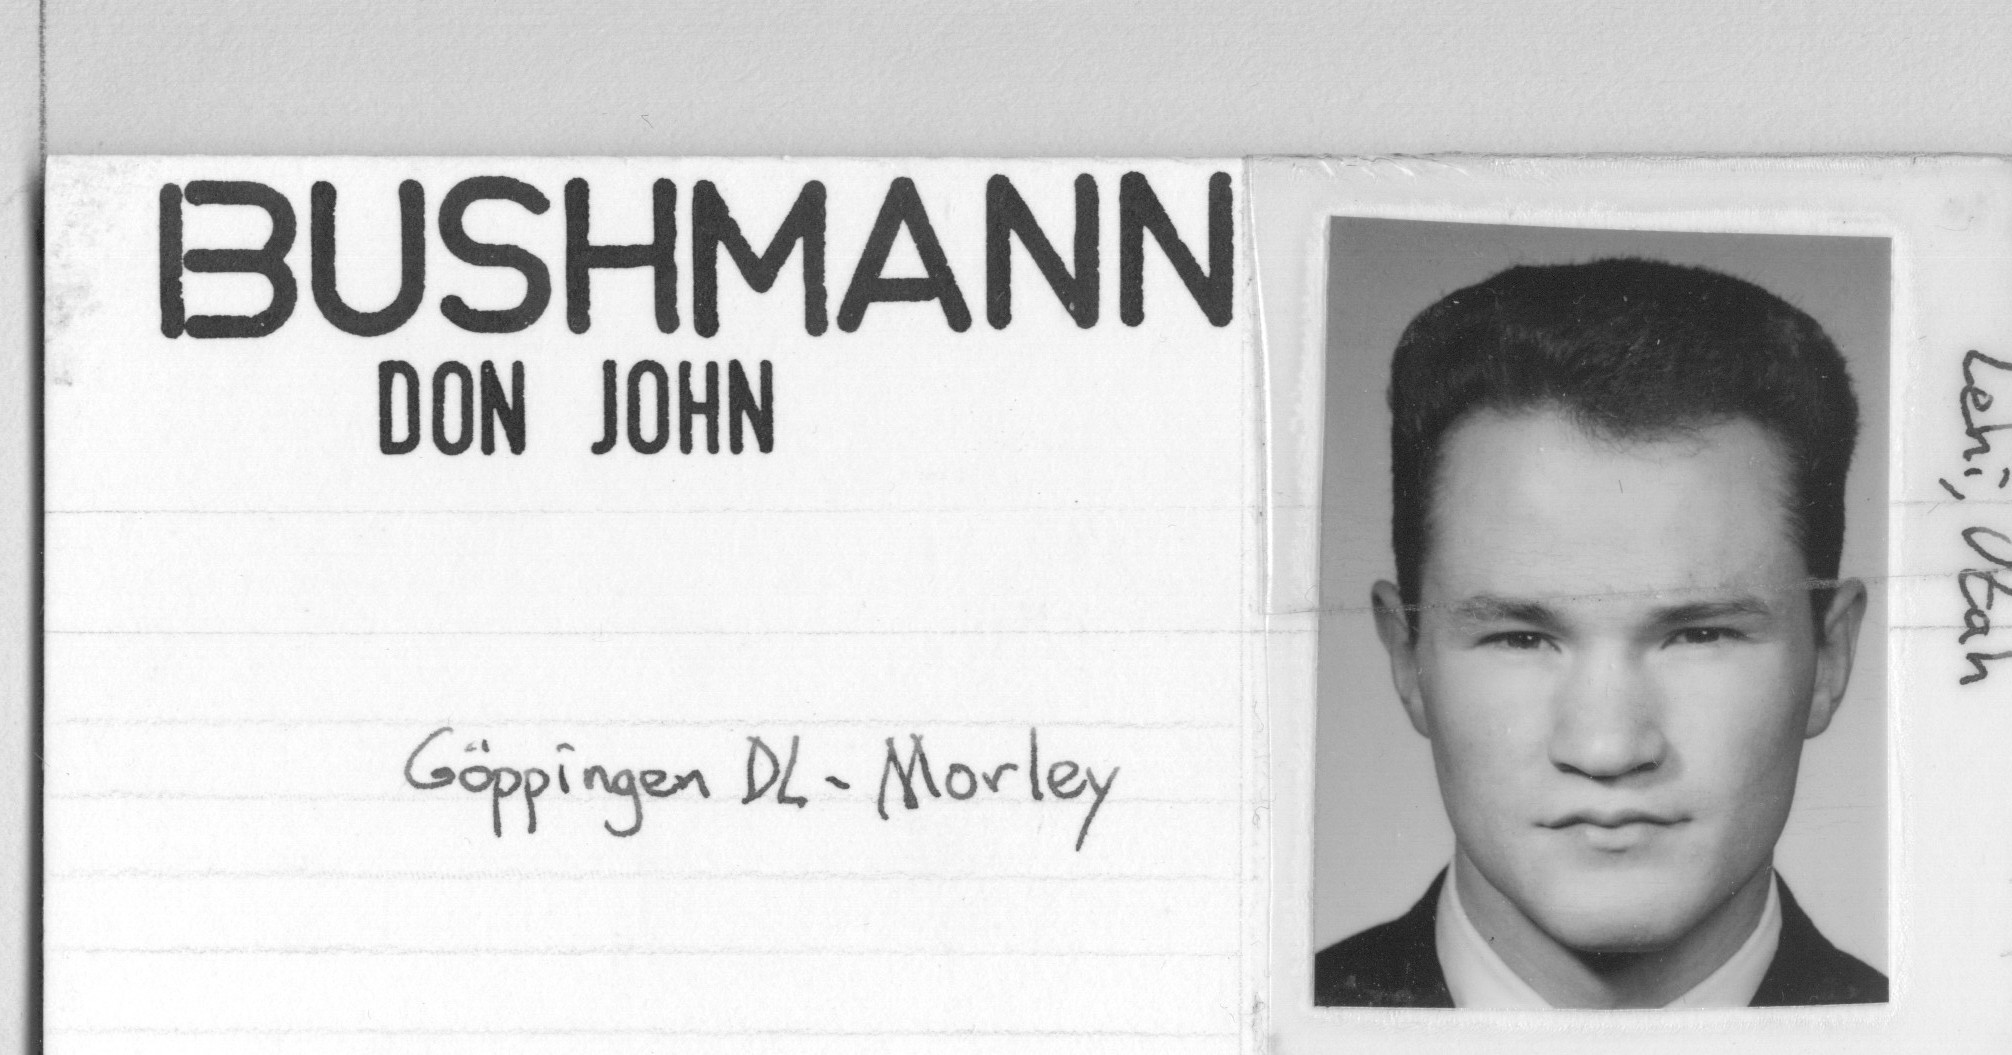 Bushmann, Don John